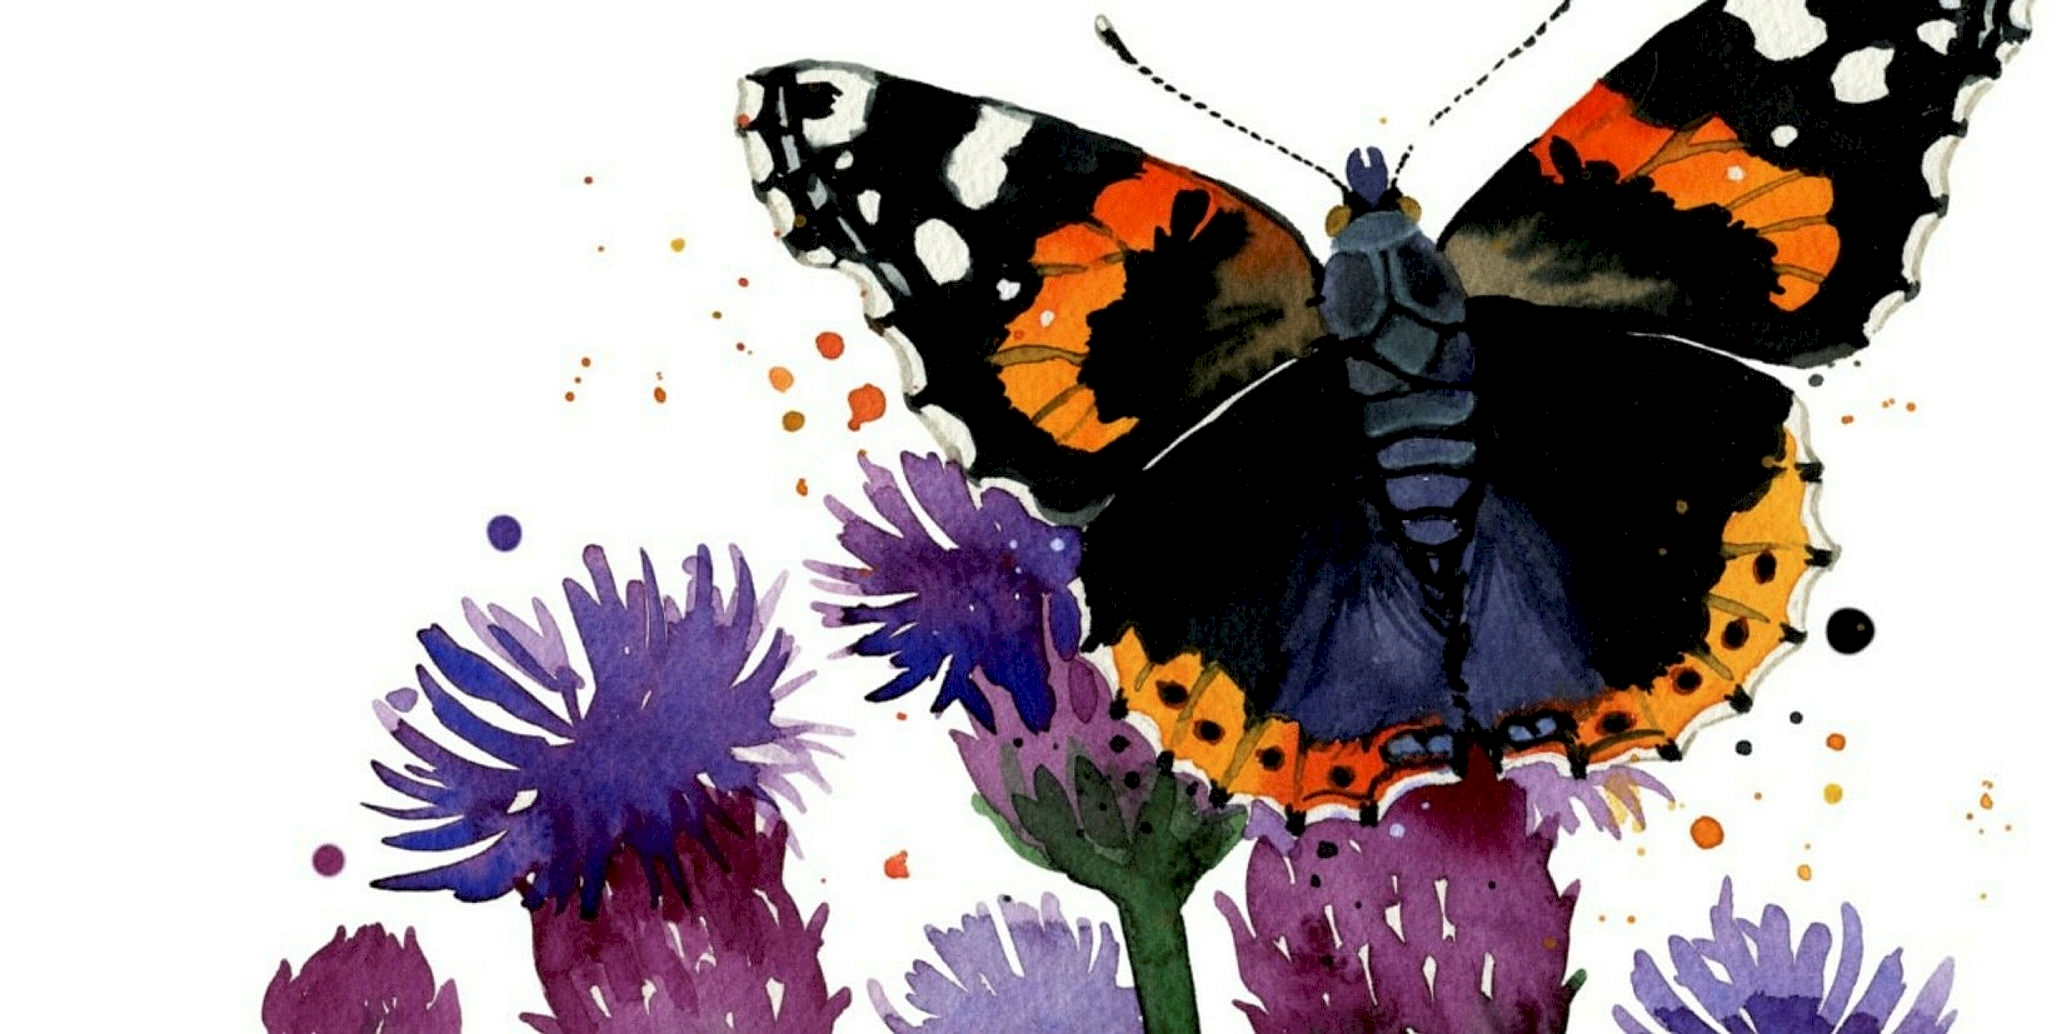 Akvarellbilde av nestlesommerfugn som sitter på lilla tistel.
Illustrasjon: Nina Marie Andersen.